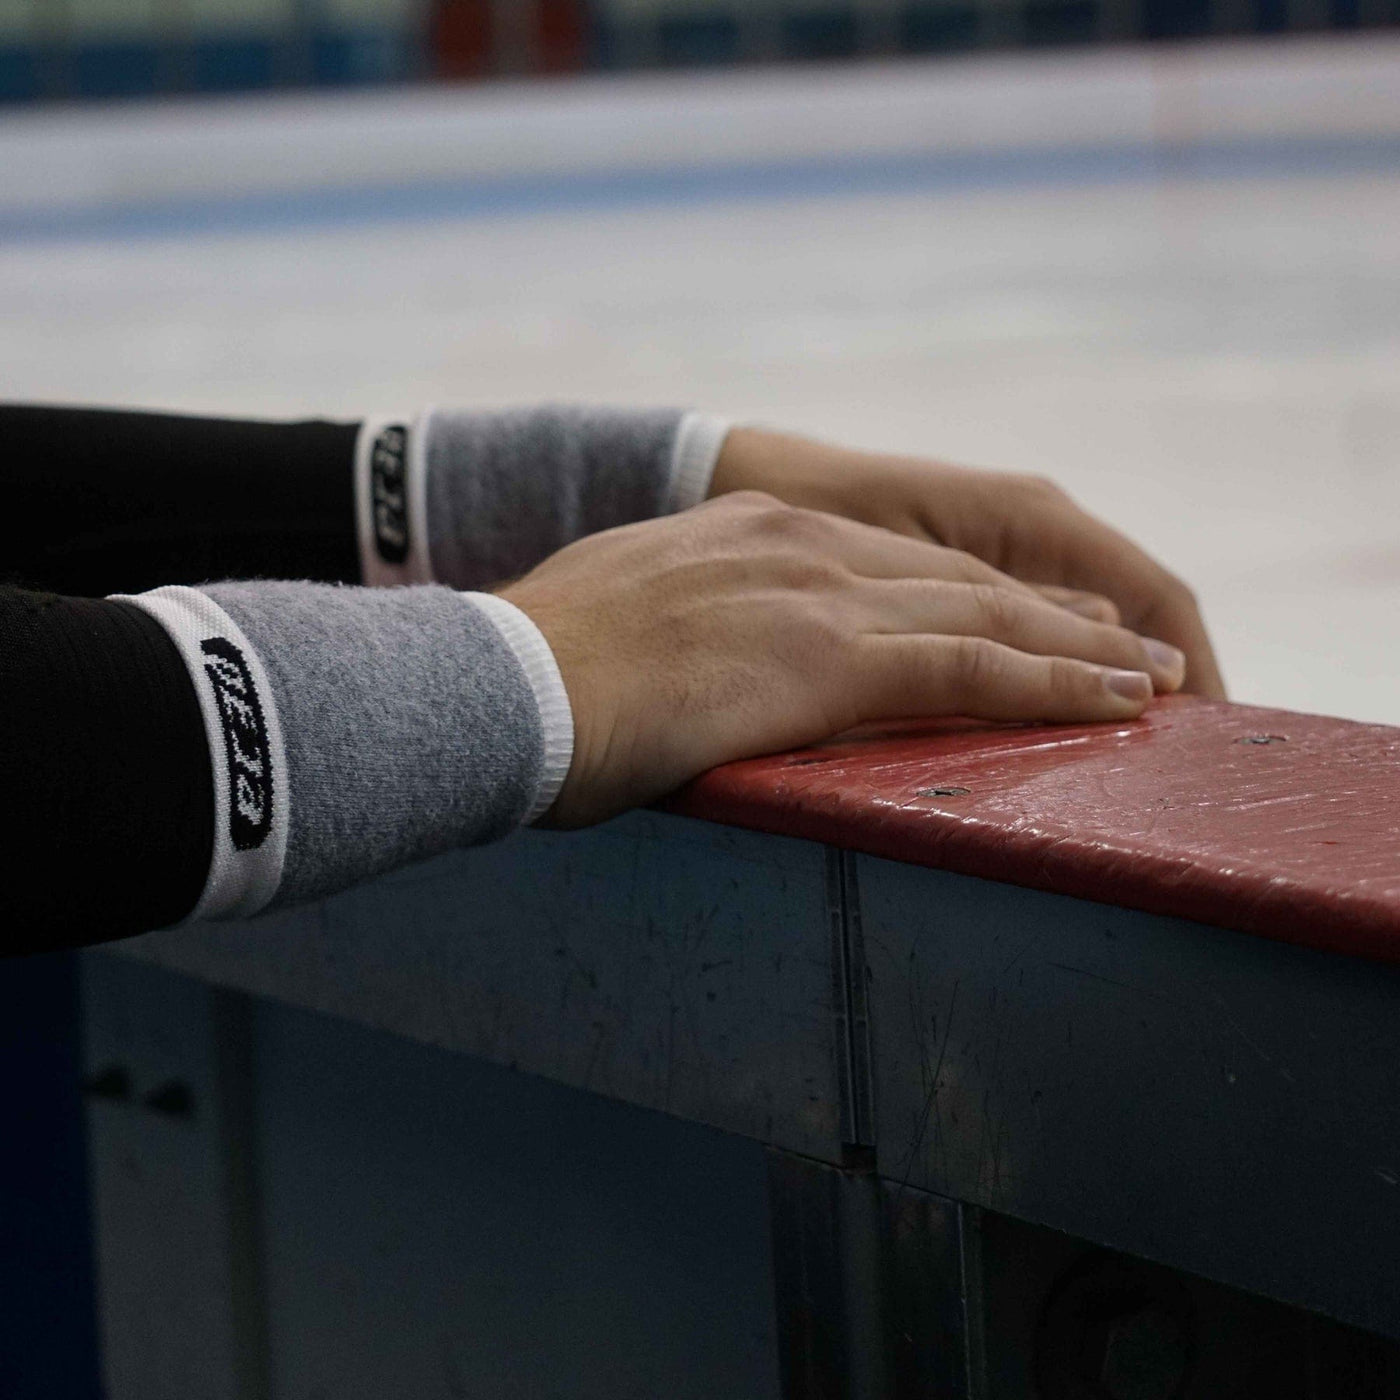 EC3D Cut Resistant Wrist Guards - TheHockeyShop.com